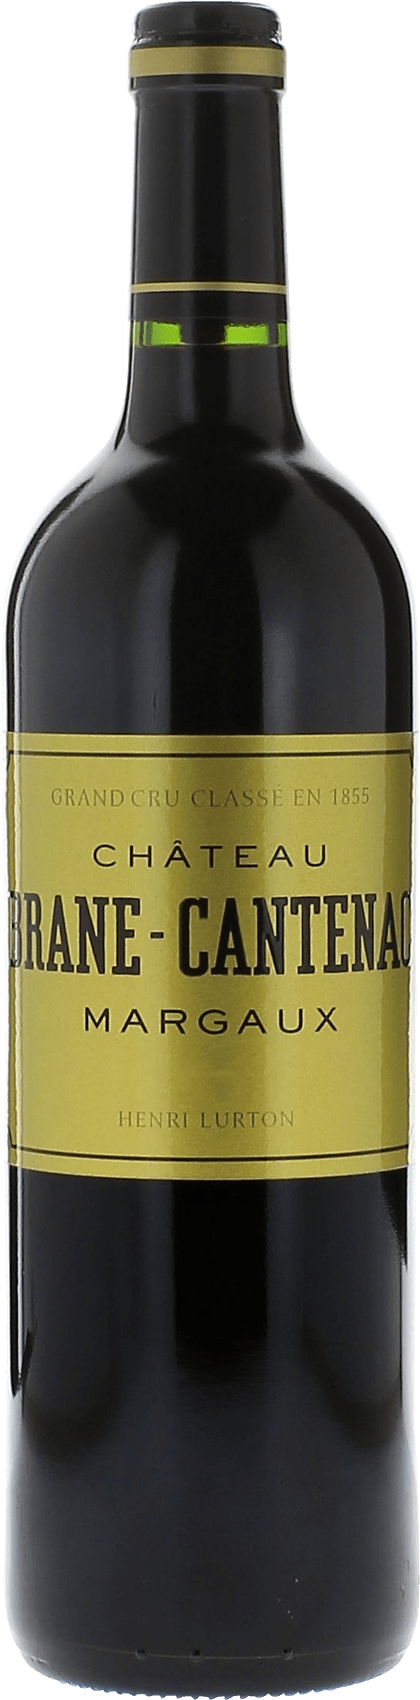 Brane cantenac 2015 2me Grand cru class Margaux, Bordeaux rouge